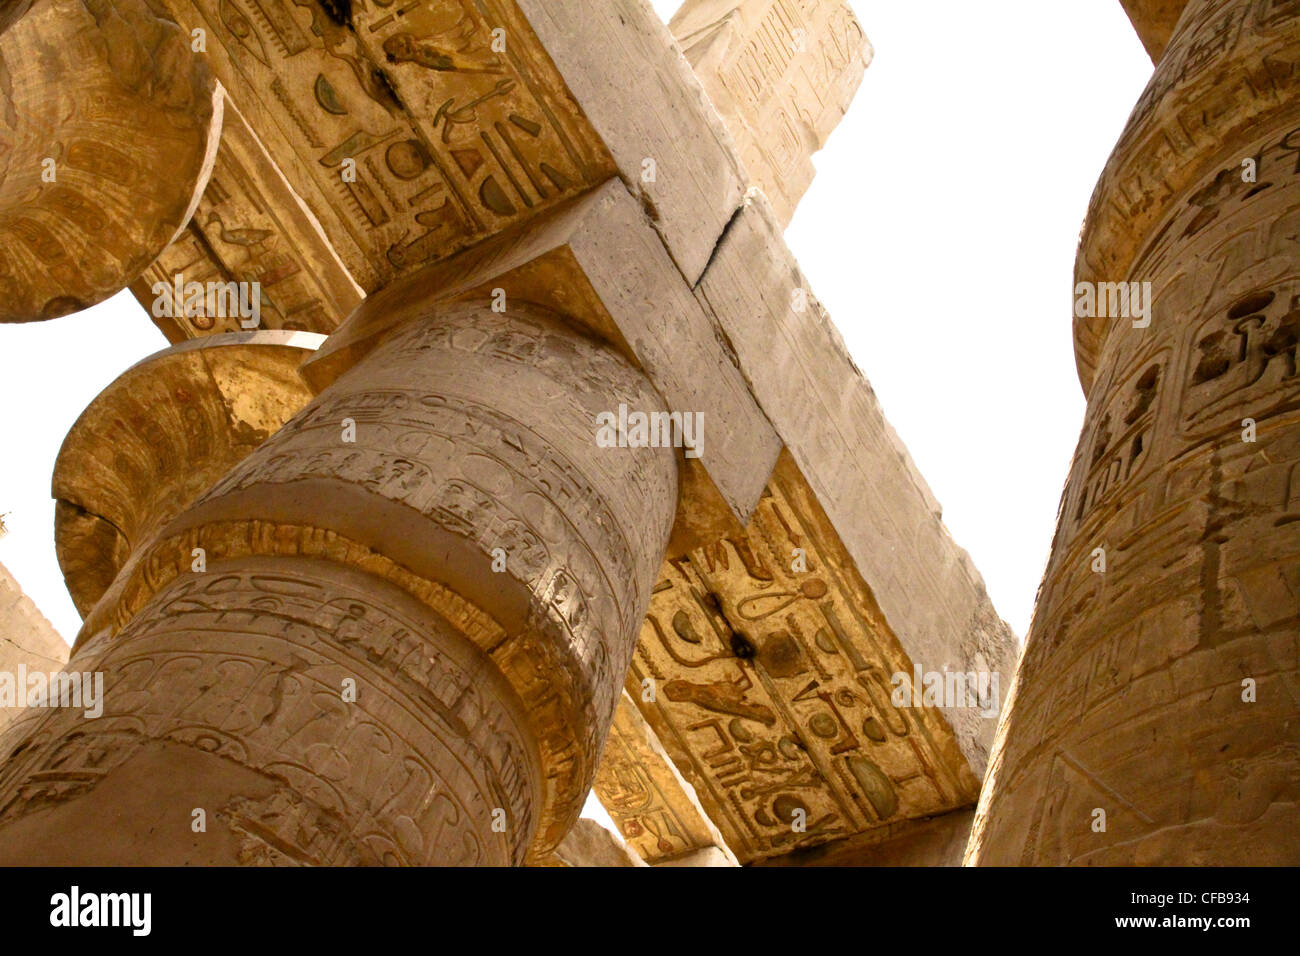 Le grand temple de karnak dédié au culte d'Amon, dans la ville de Louxor en Égypte Banque D'Images